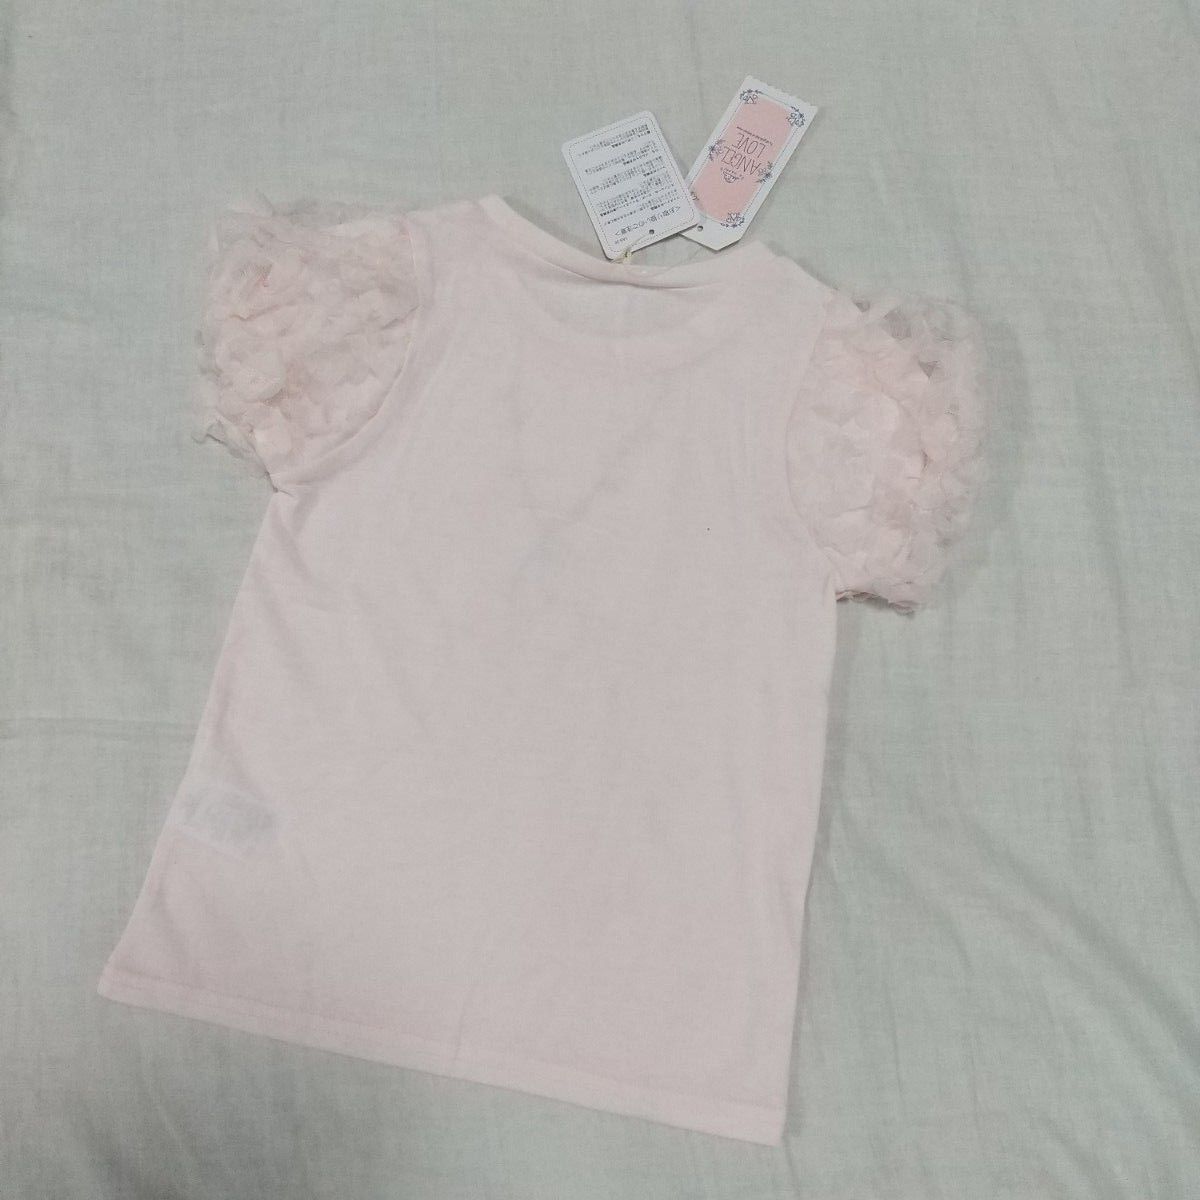 新品未使用 さくらんぼ 半袖 Tシャツ 120  しゃかしゃかスパンコール ピンク ネックレス風